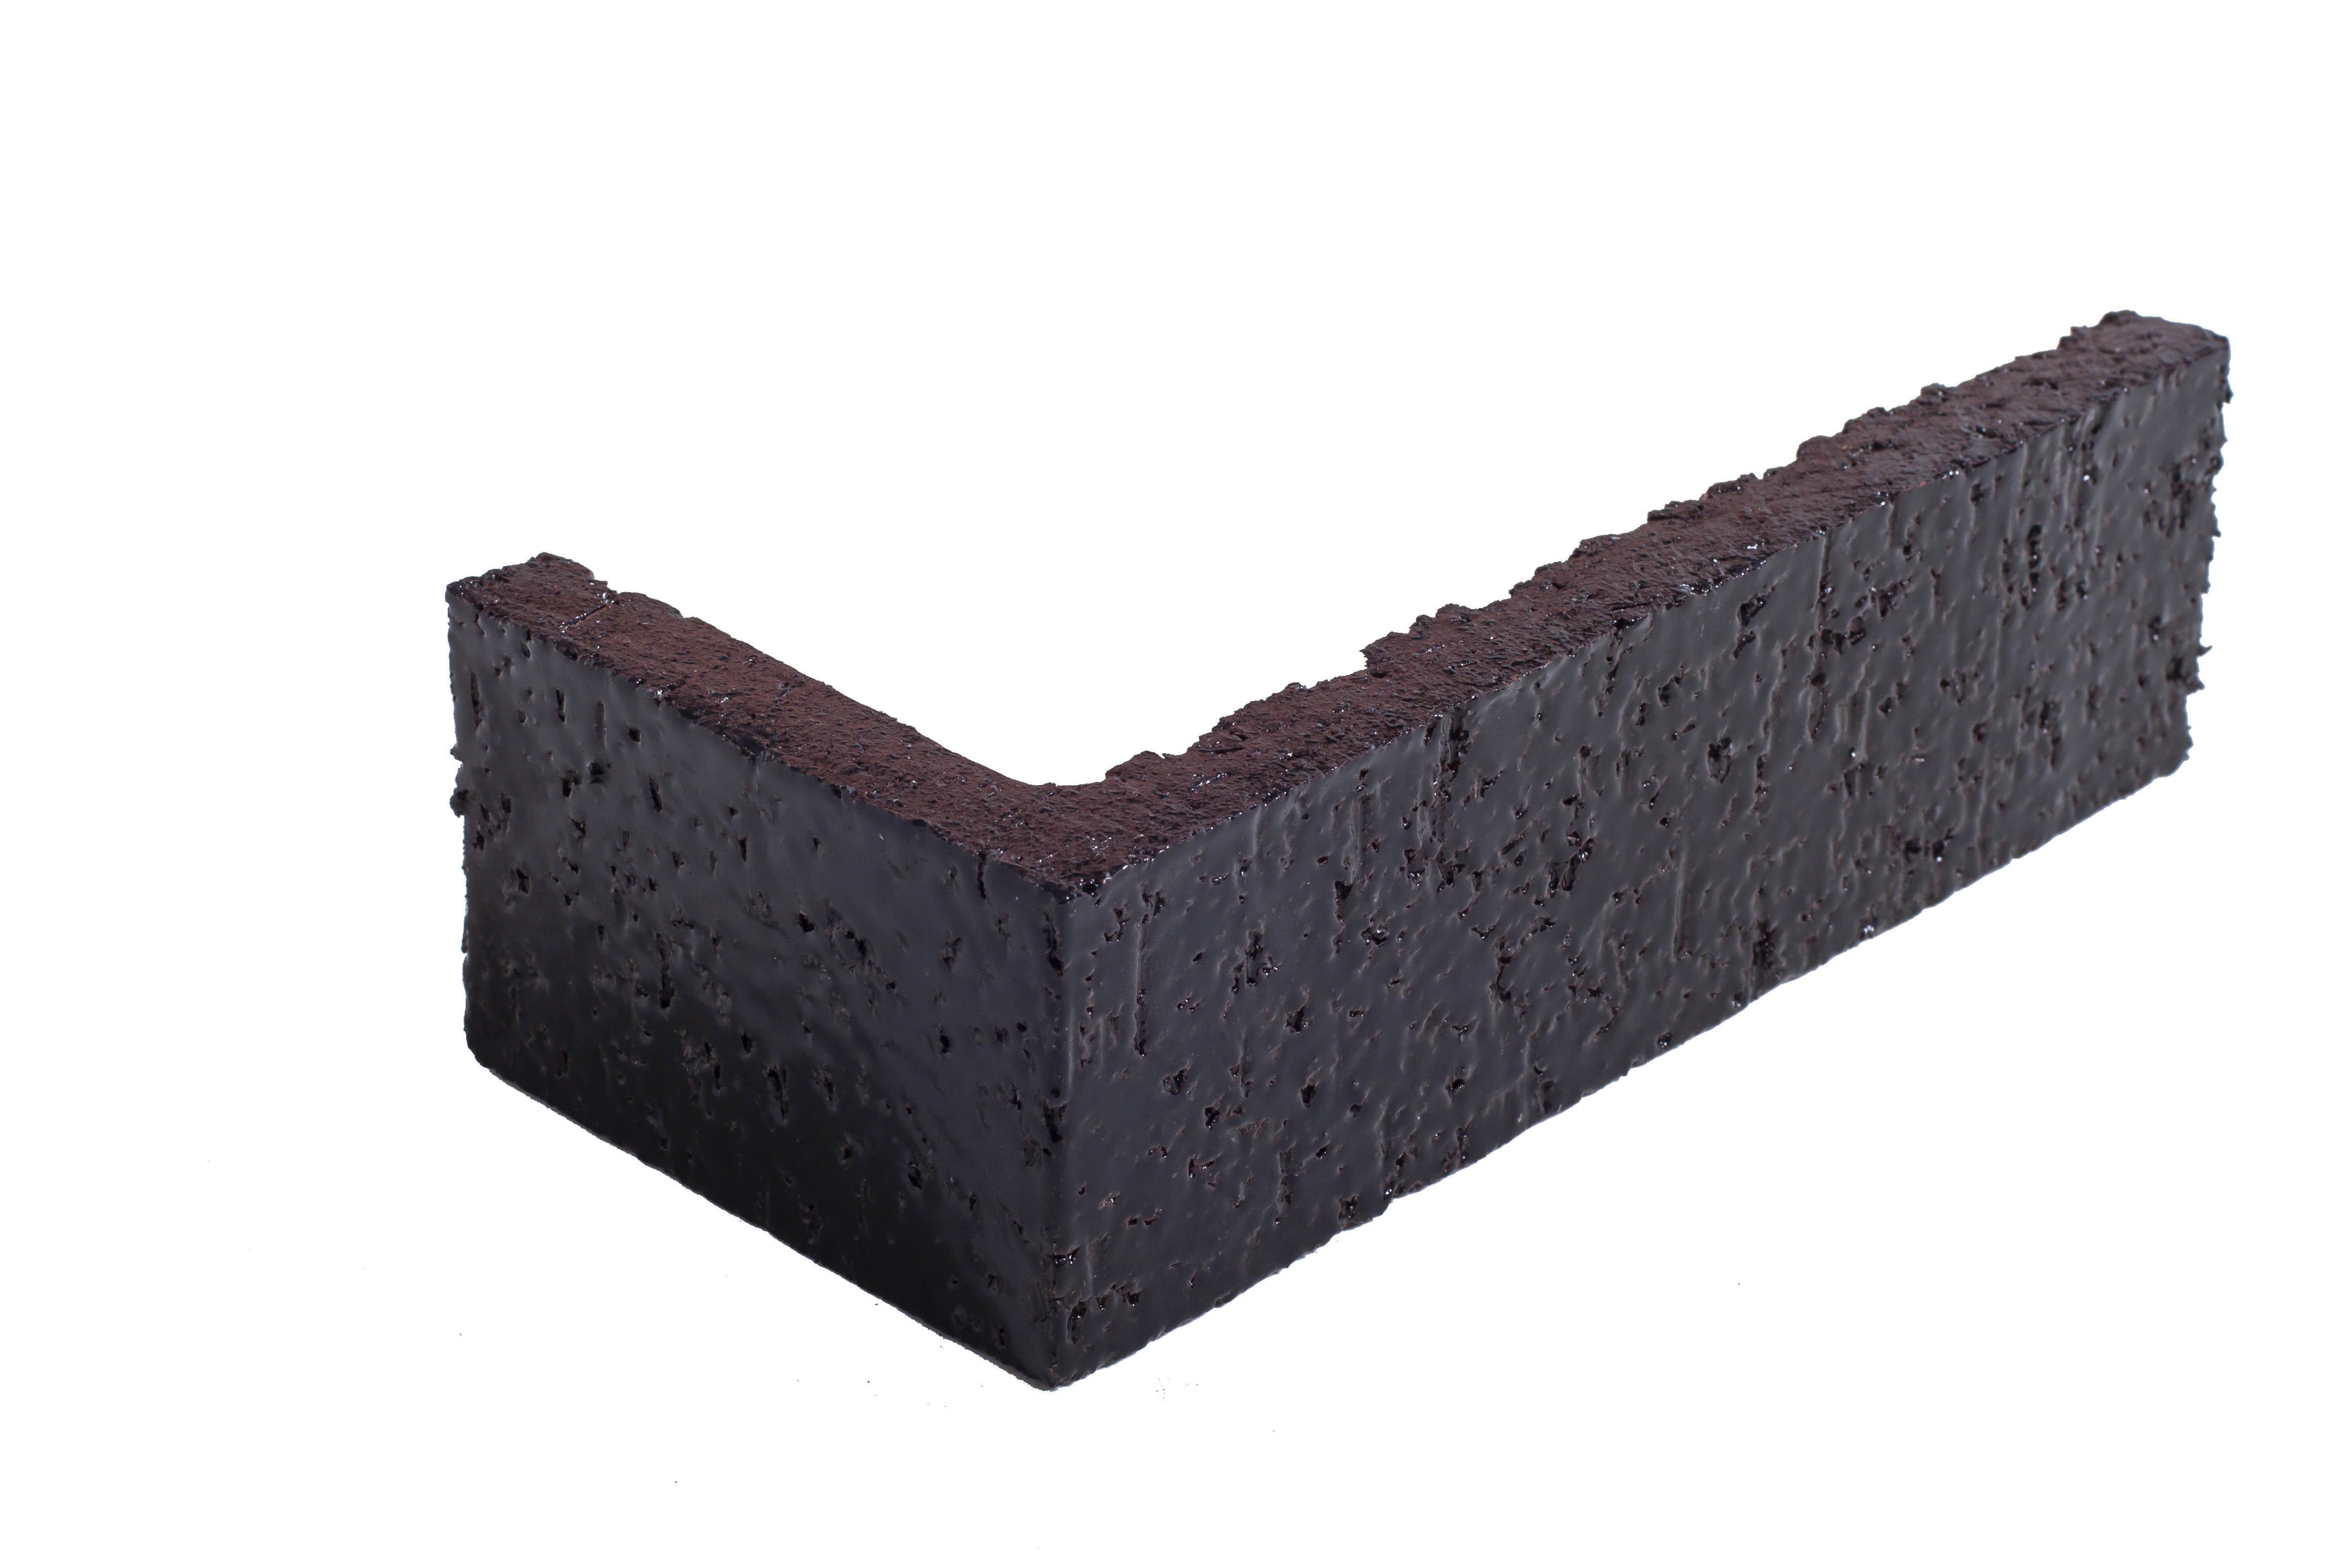 Arto Glazed Brick: Licorice  (Corner 2¼"x7⅝"x⅝")